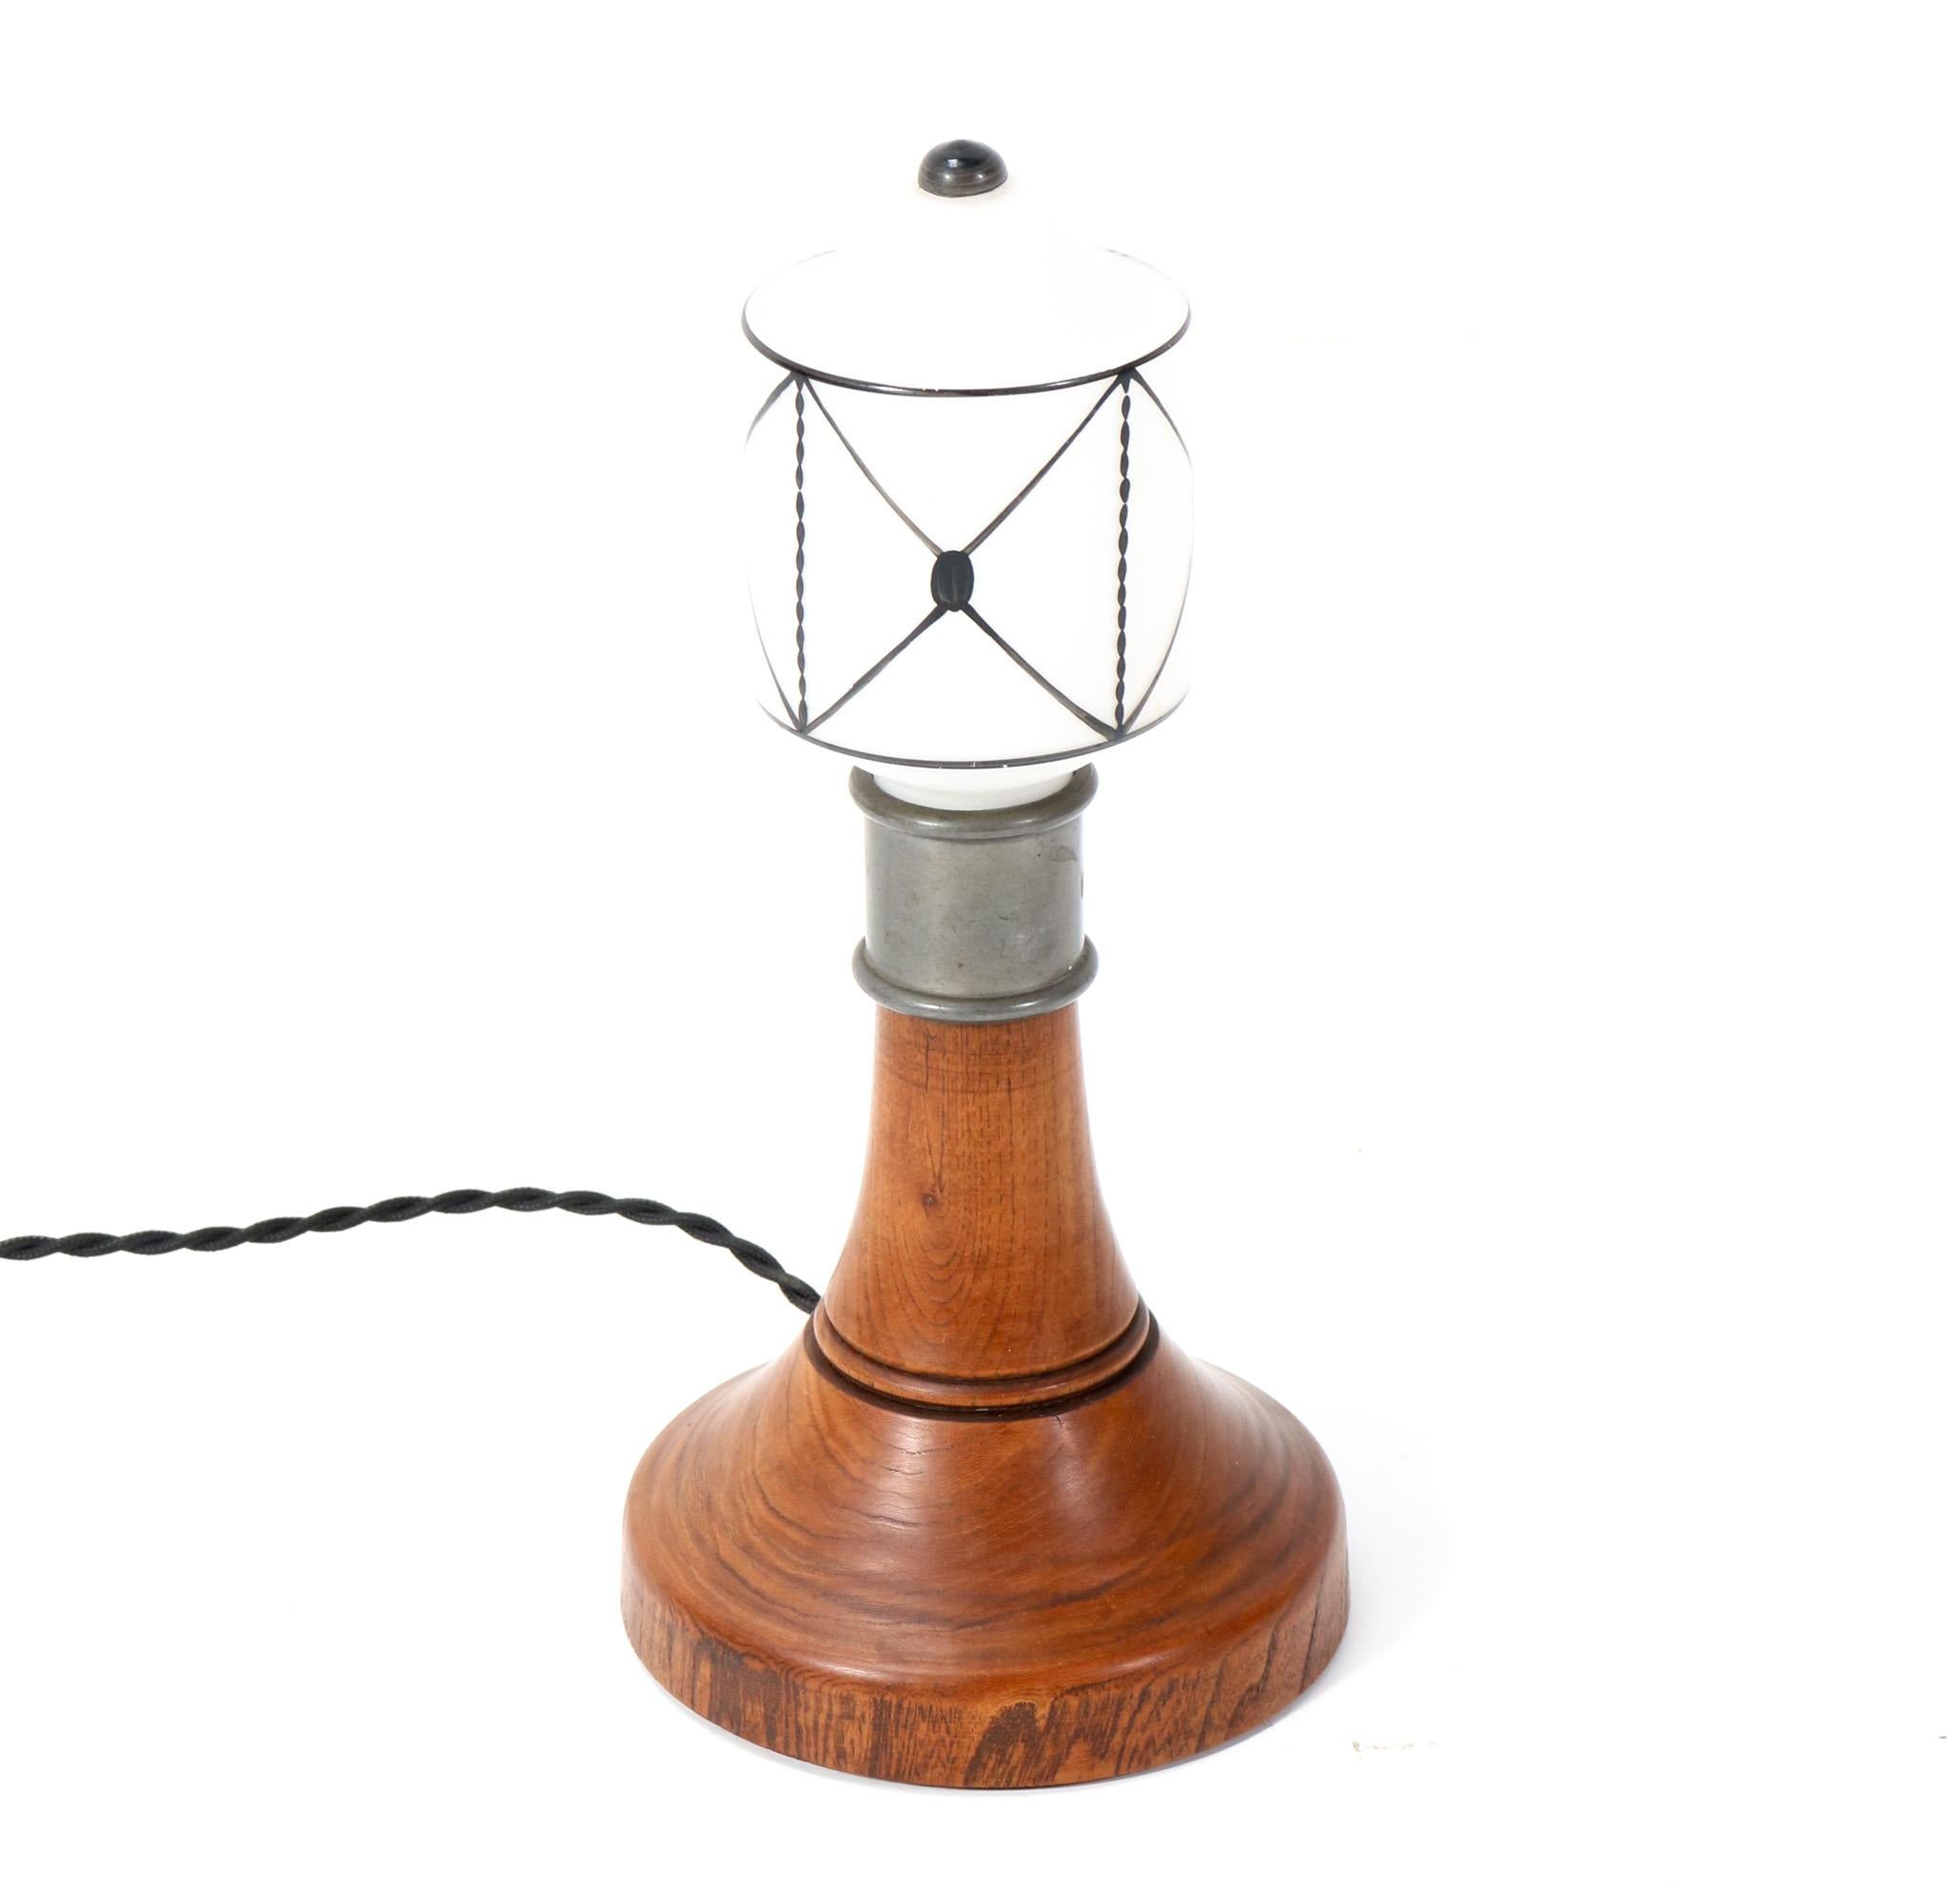 Merveilleuse et rare lampe de table Arts & Crafts Art Nouveau.
Un design néerlandais saisissant des années 1900.
Base en orme massif avec abat-jour en verre au lait d'origine.
Recâblage avec une douille pour ampoule E-14.
Cette magnifique lampe de